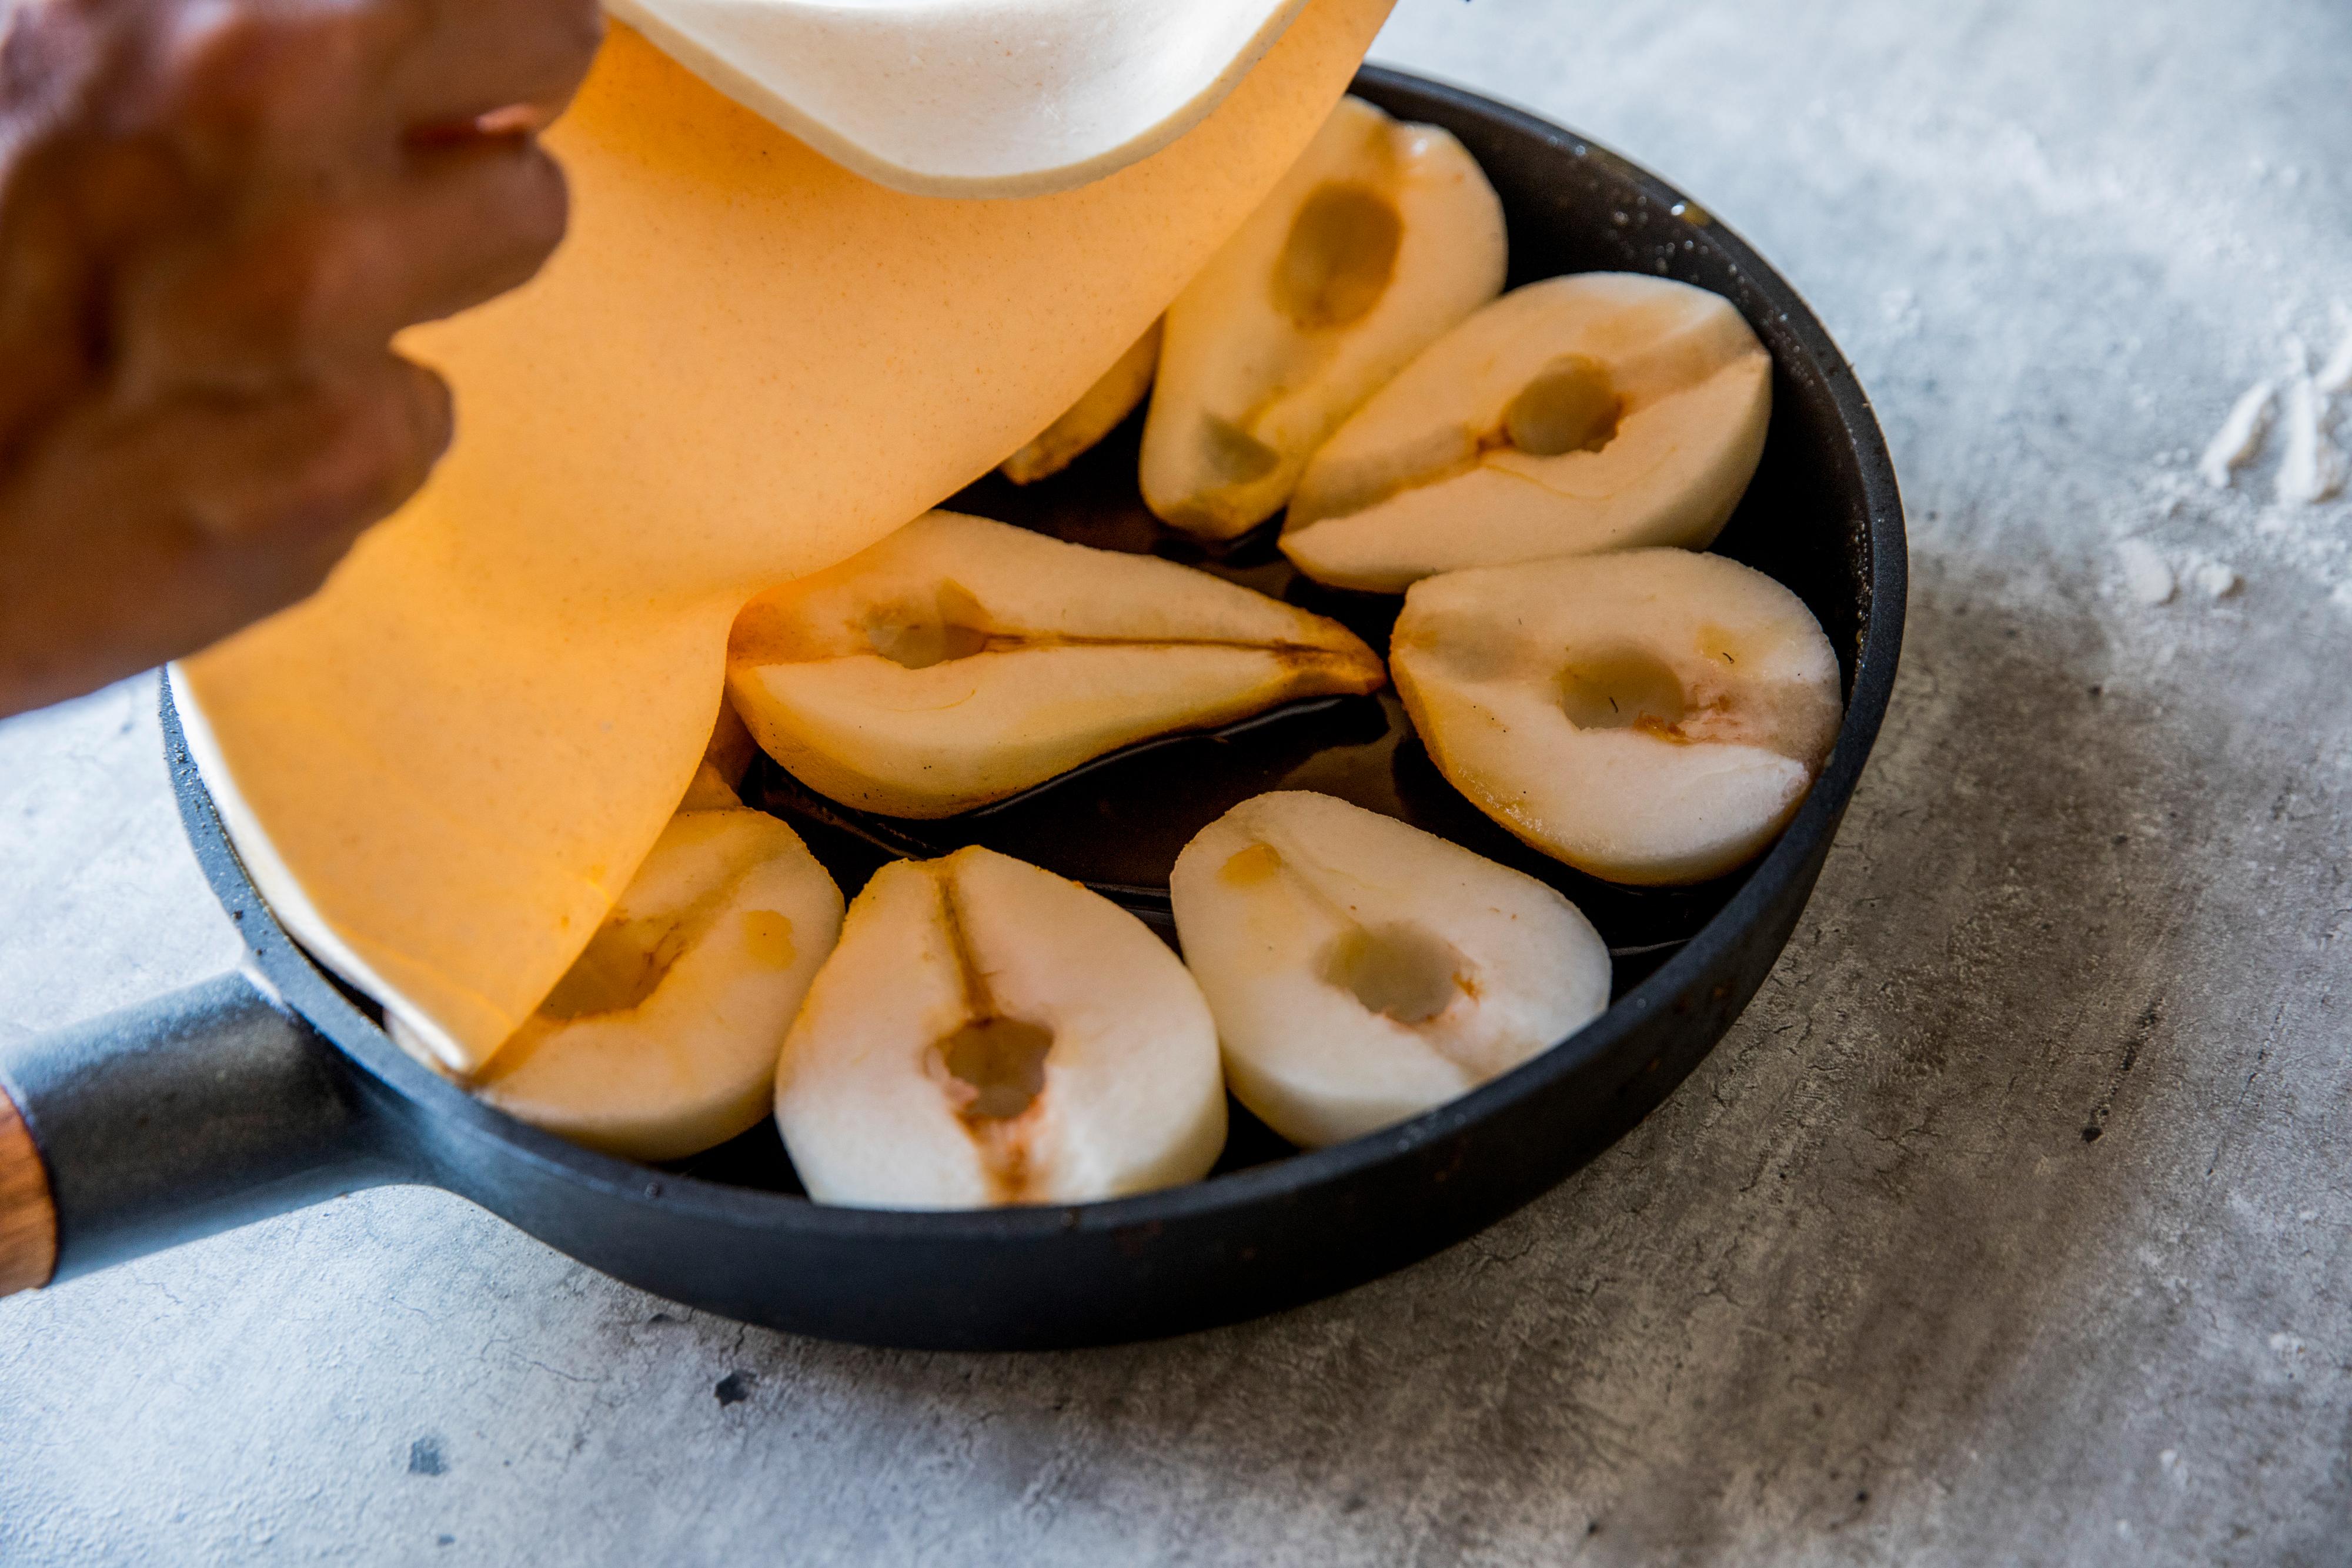 Legg den kalde butterdeigen over pærene.